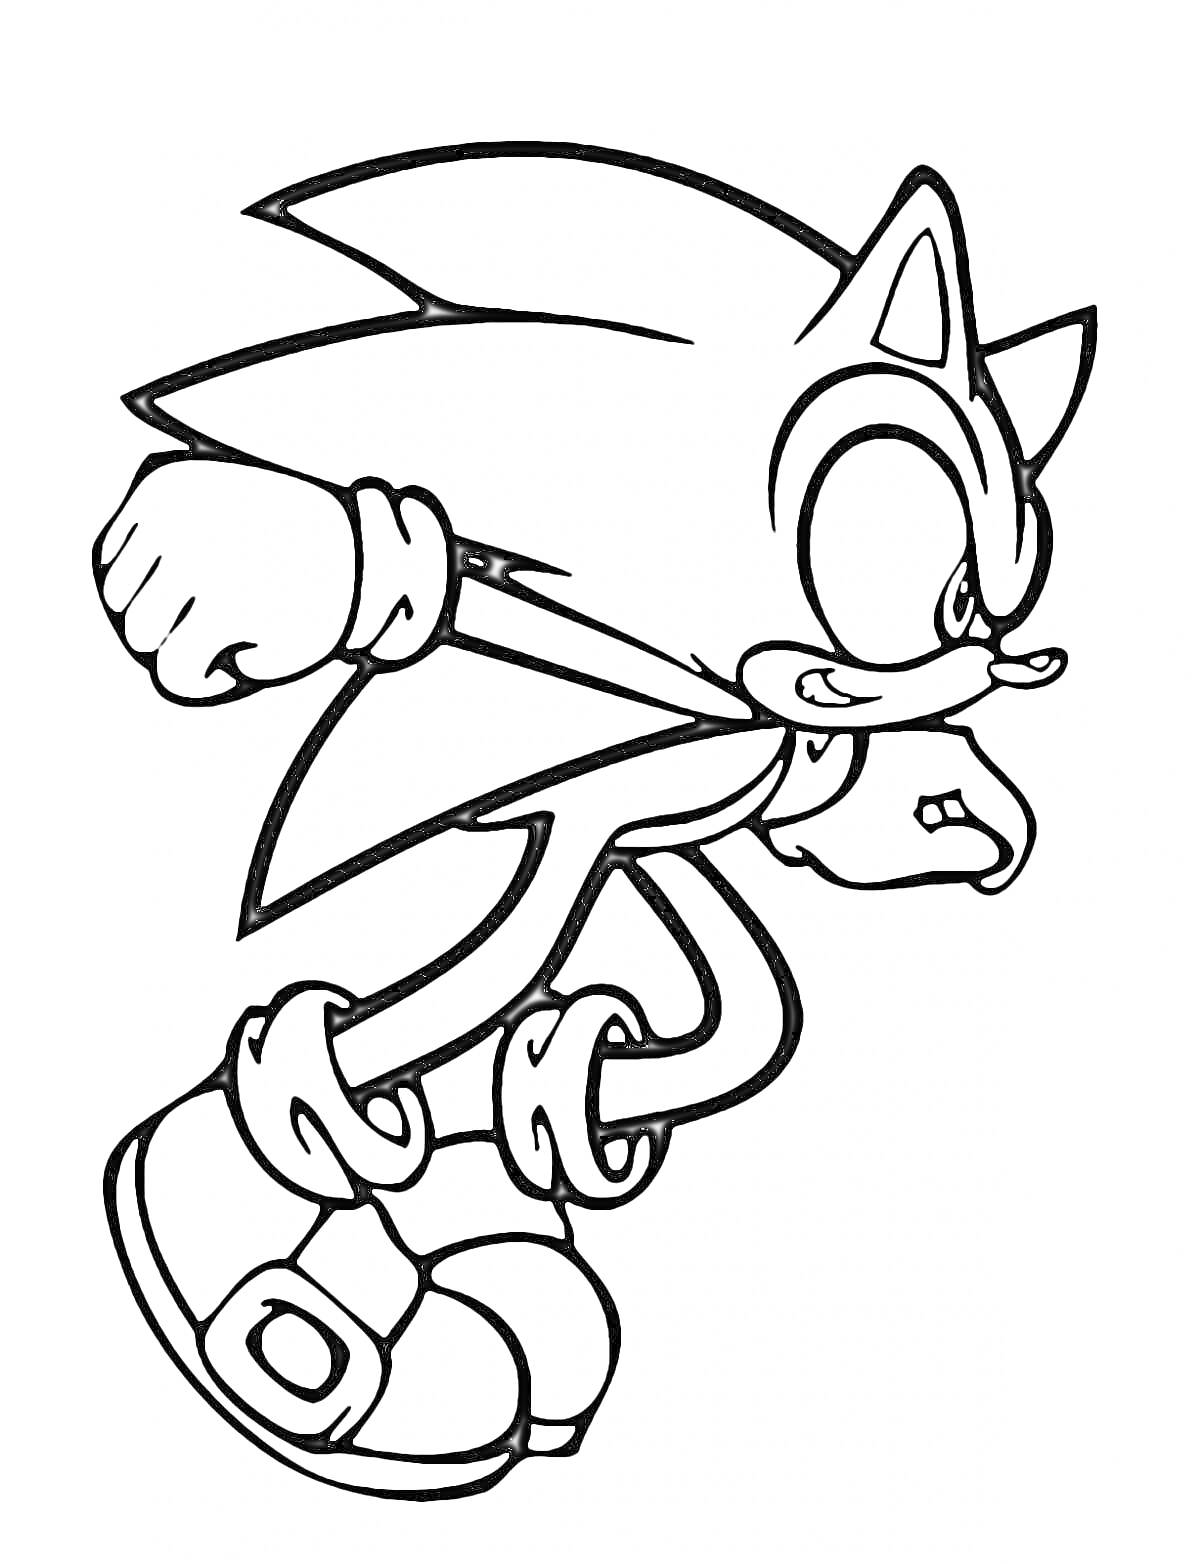 Раскраска Сонник в прыжке с прижатым кулаком, в кроссовках, с остроконечными ушами и шипованными волосами